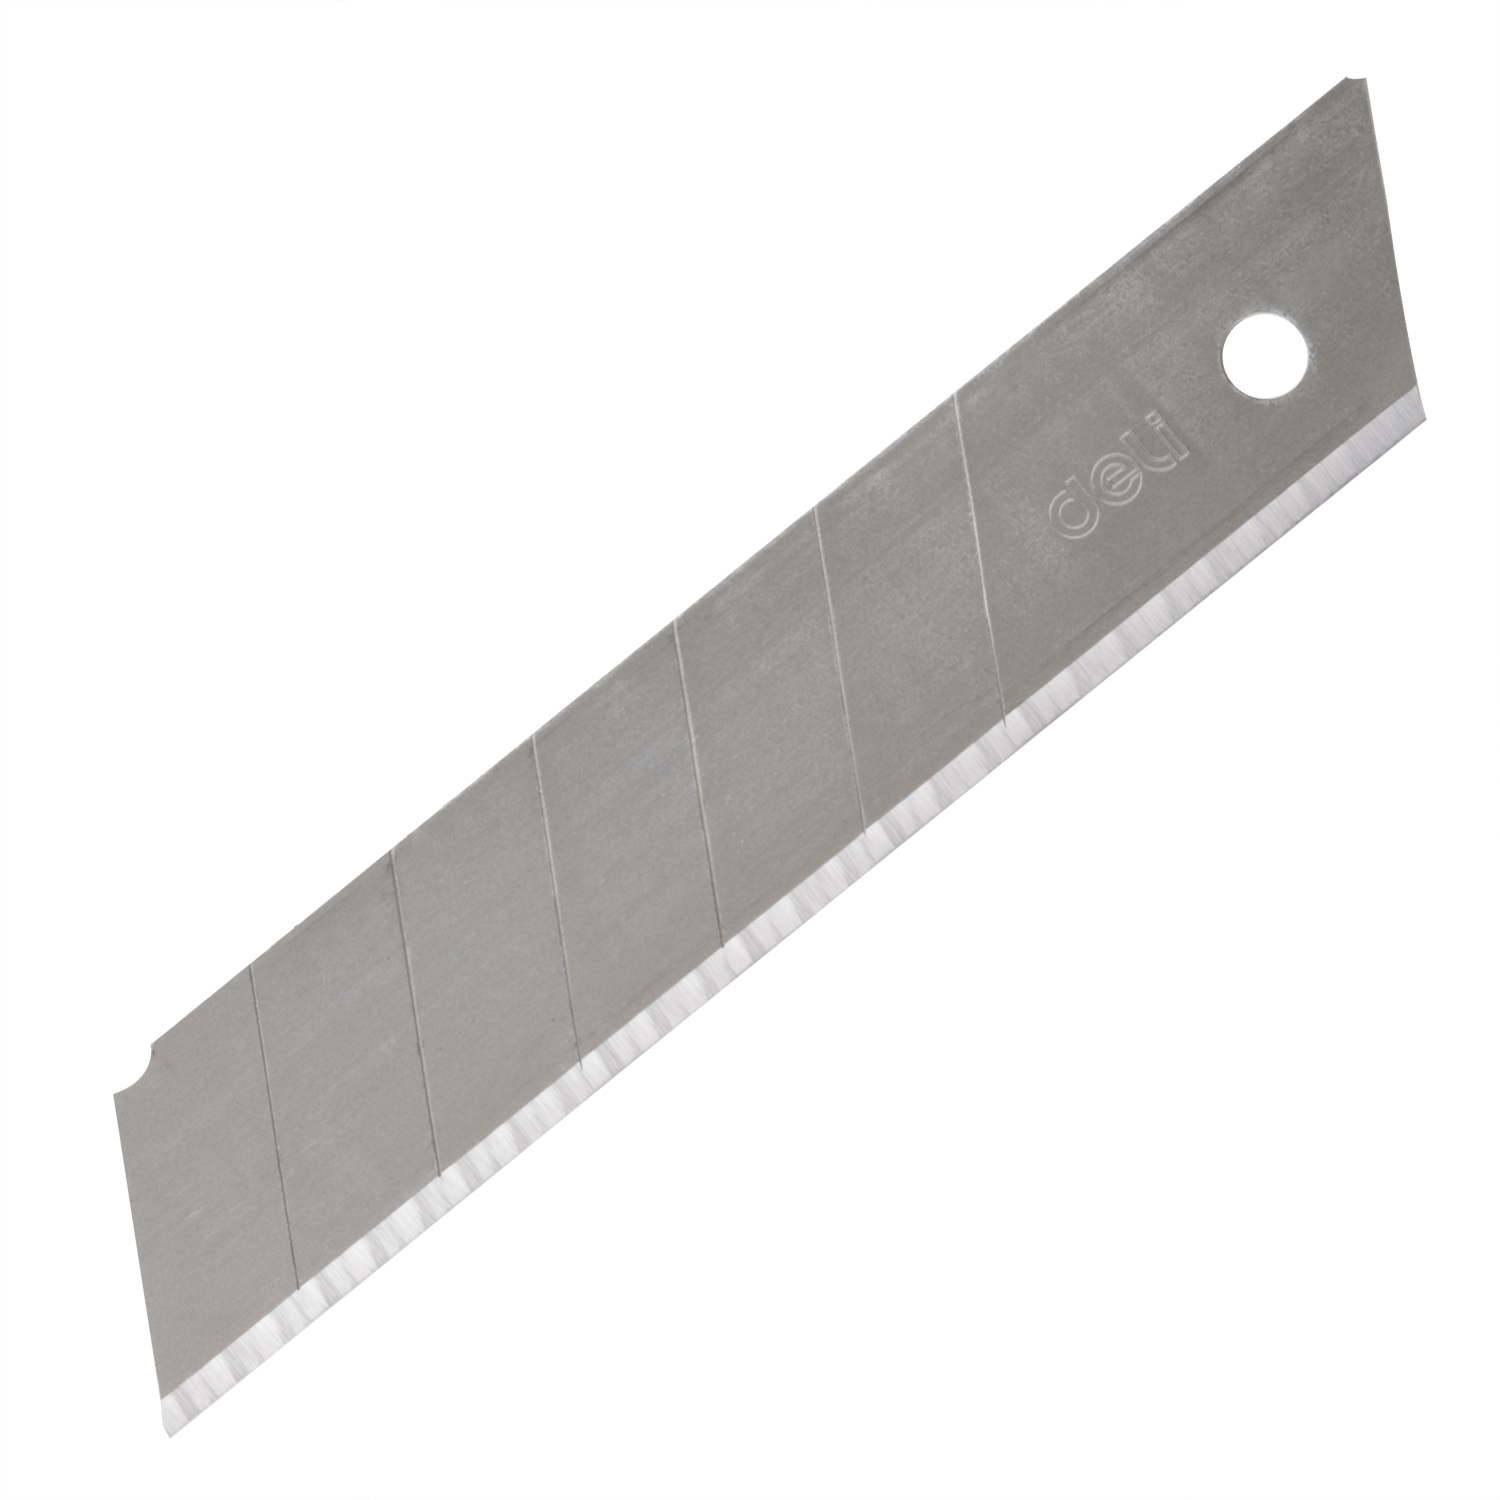  Blade de couteau utilitaire 25 mm